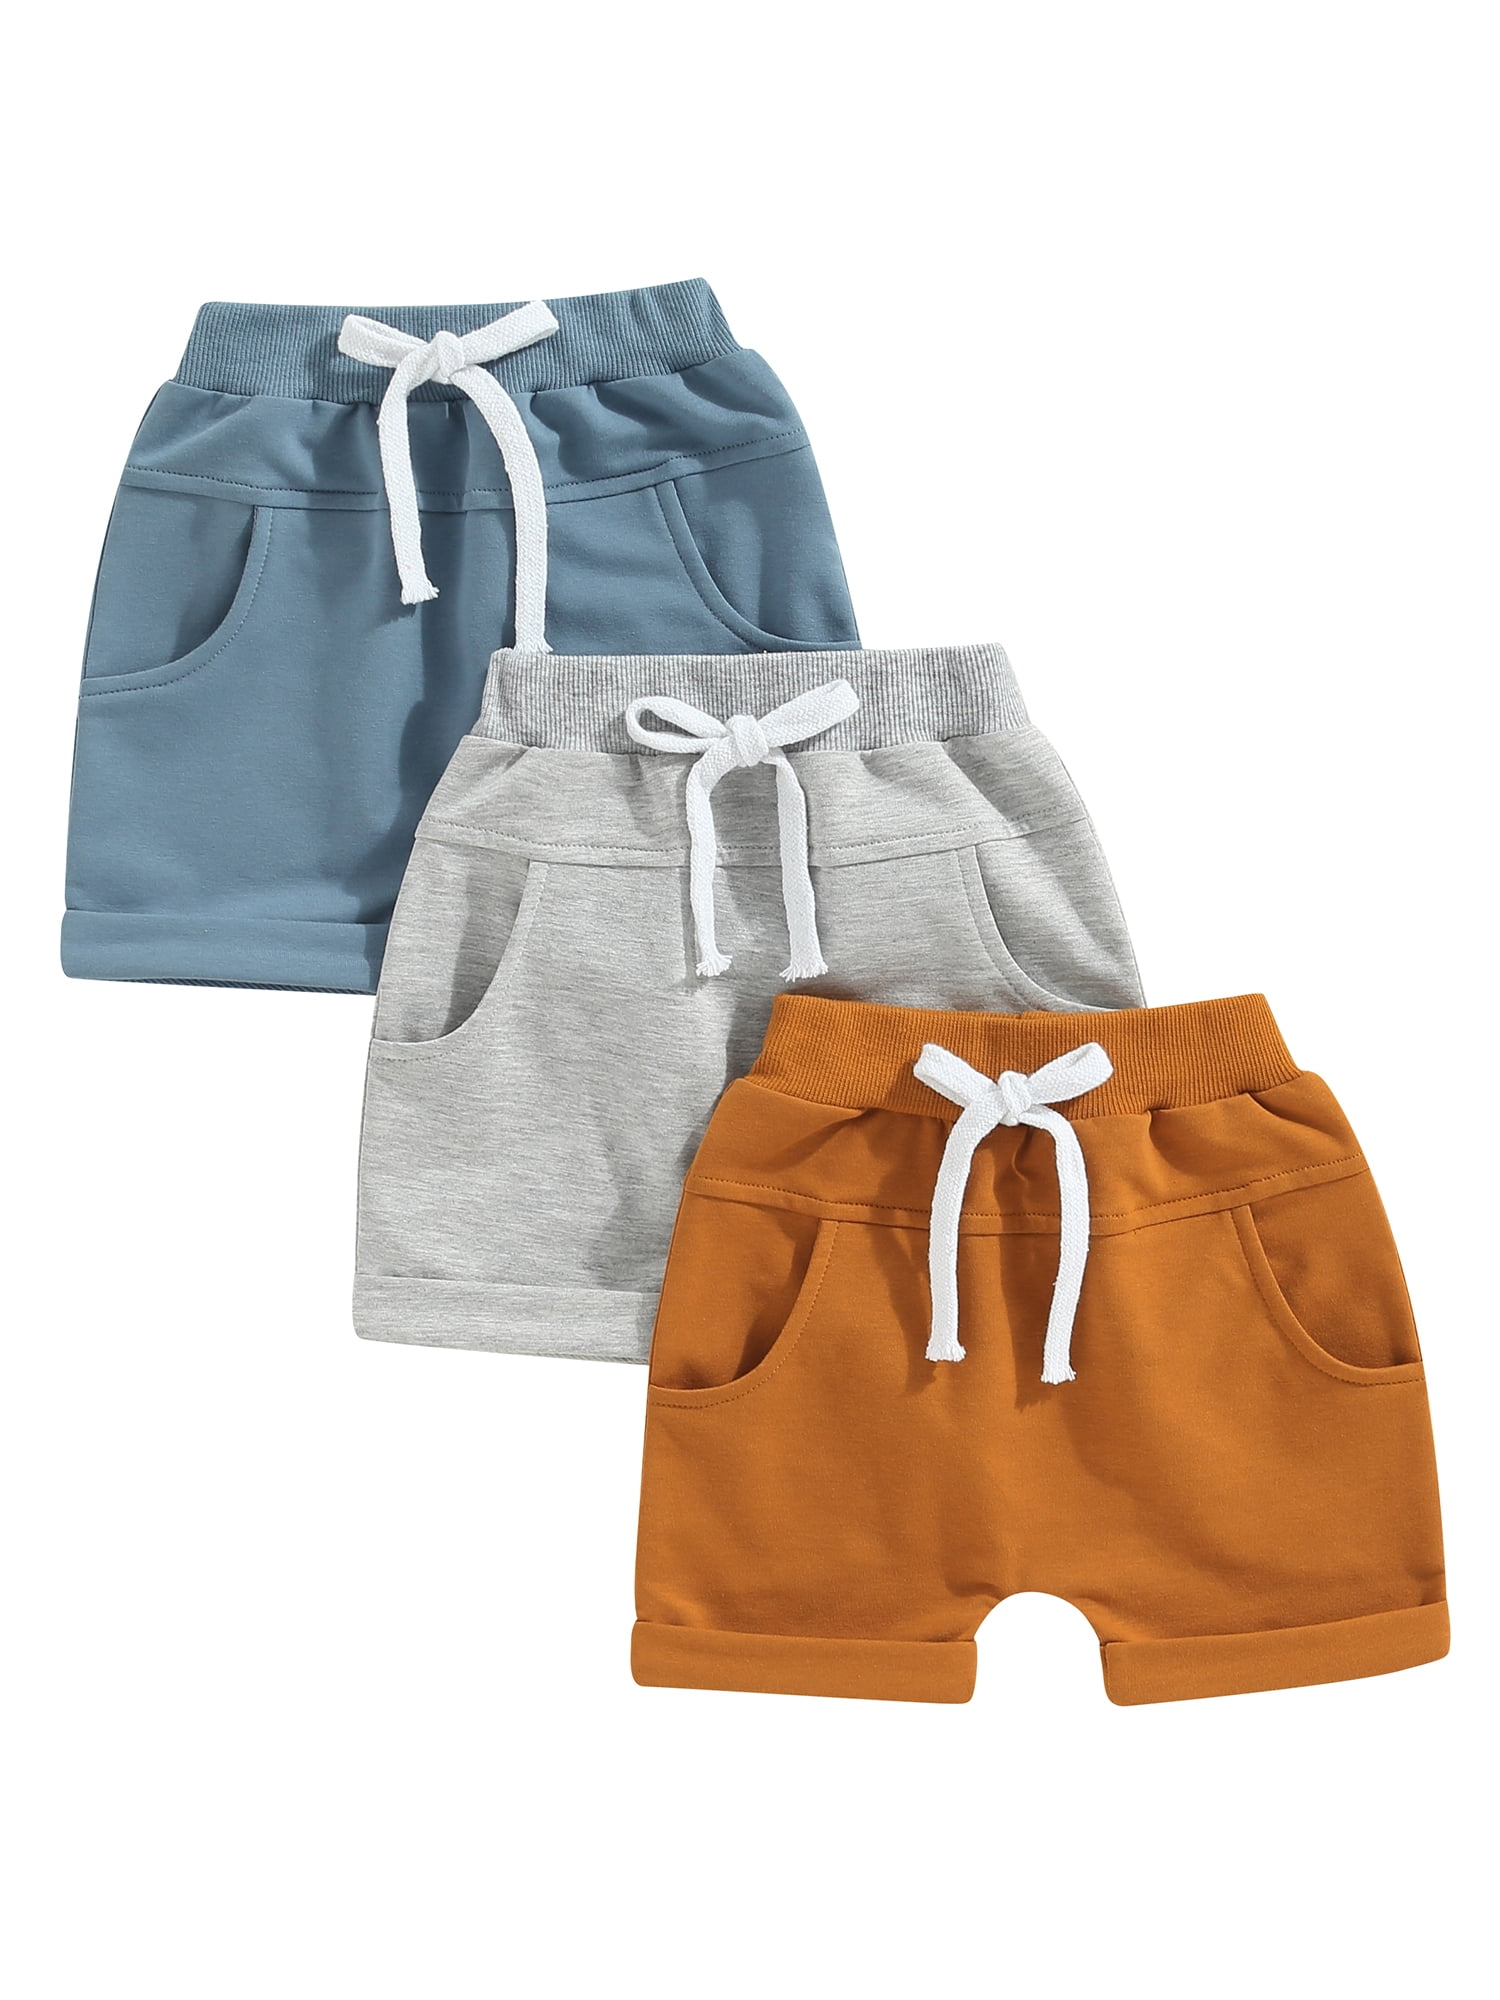 Kids Boys Fashionable Adjustable Waistline Convenient Wear Capri Short Pants  Casual Knee Cotton Pants Wine Red 120 Size